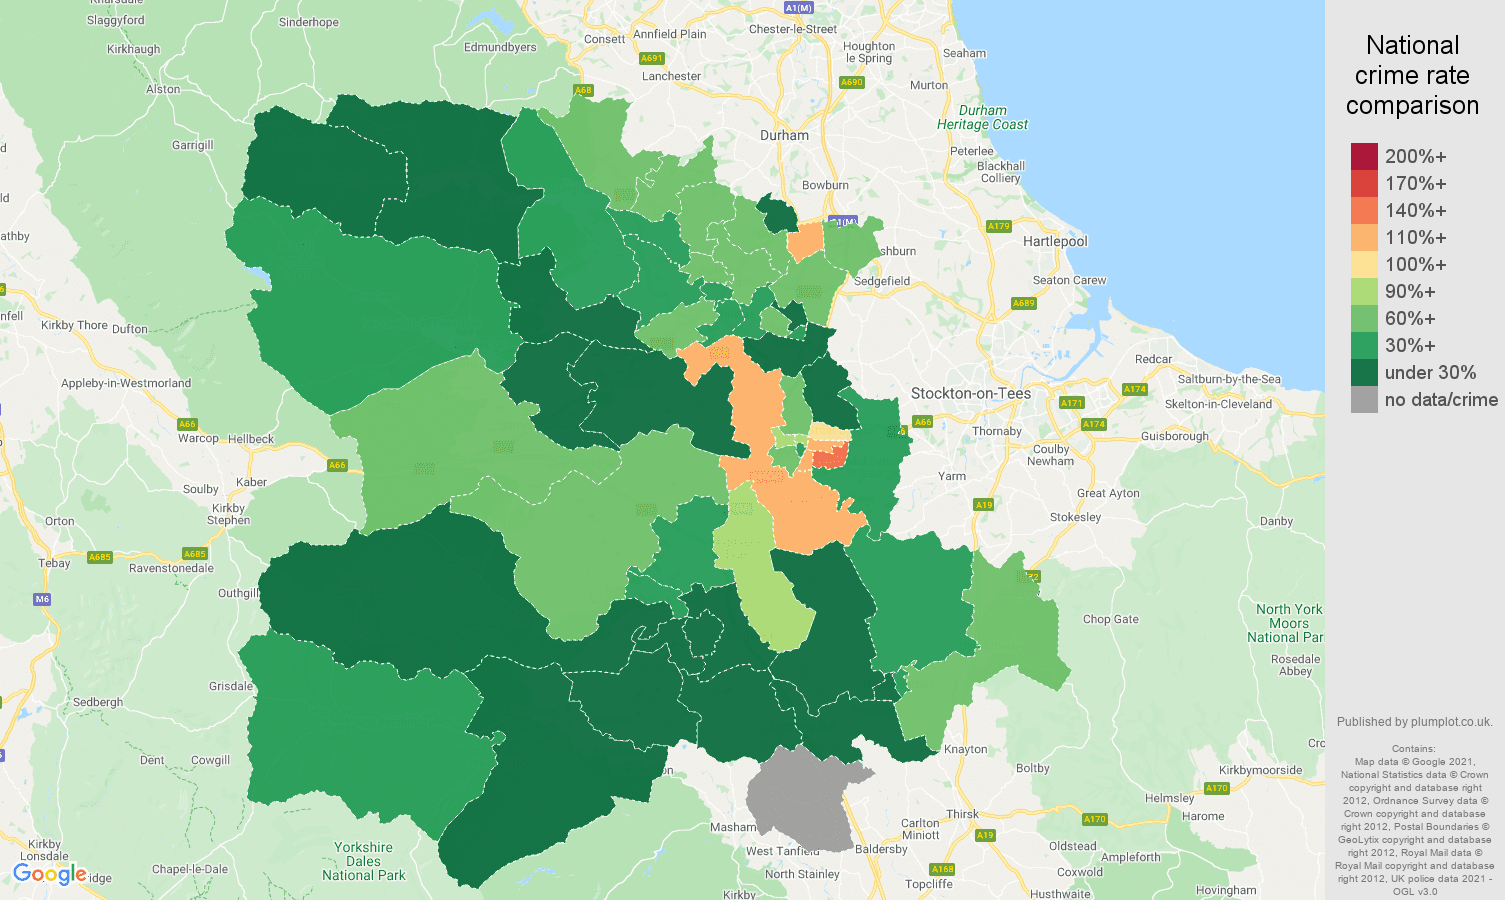 Darlington vehicle crime rate comparison map